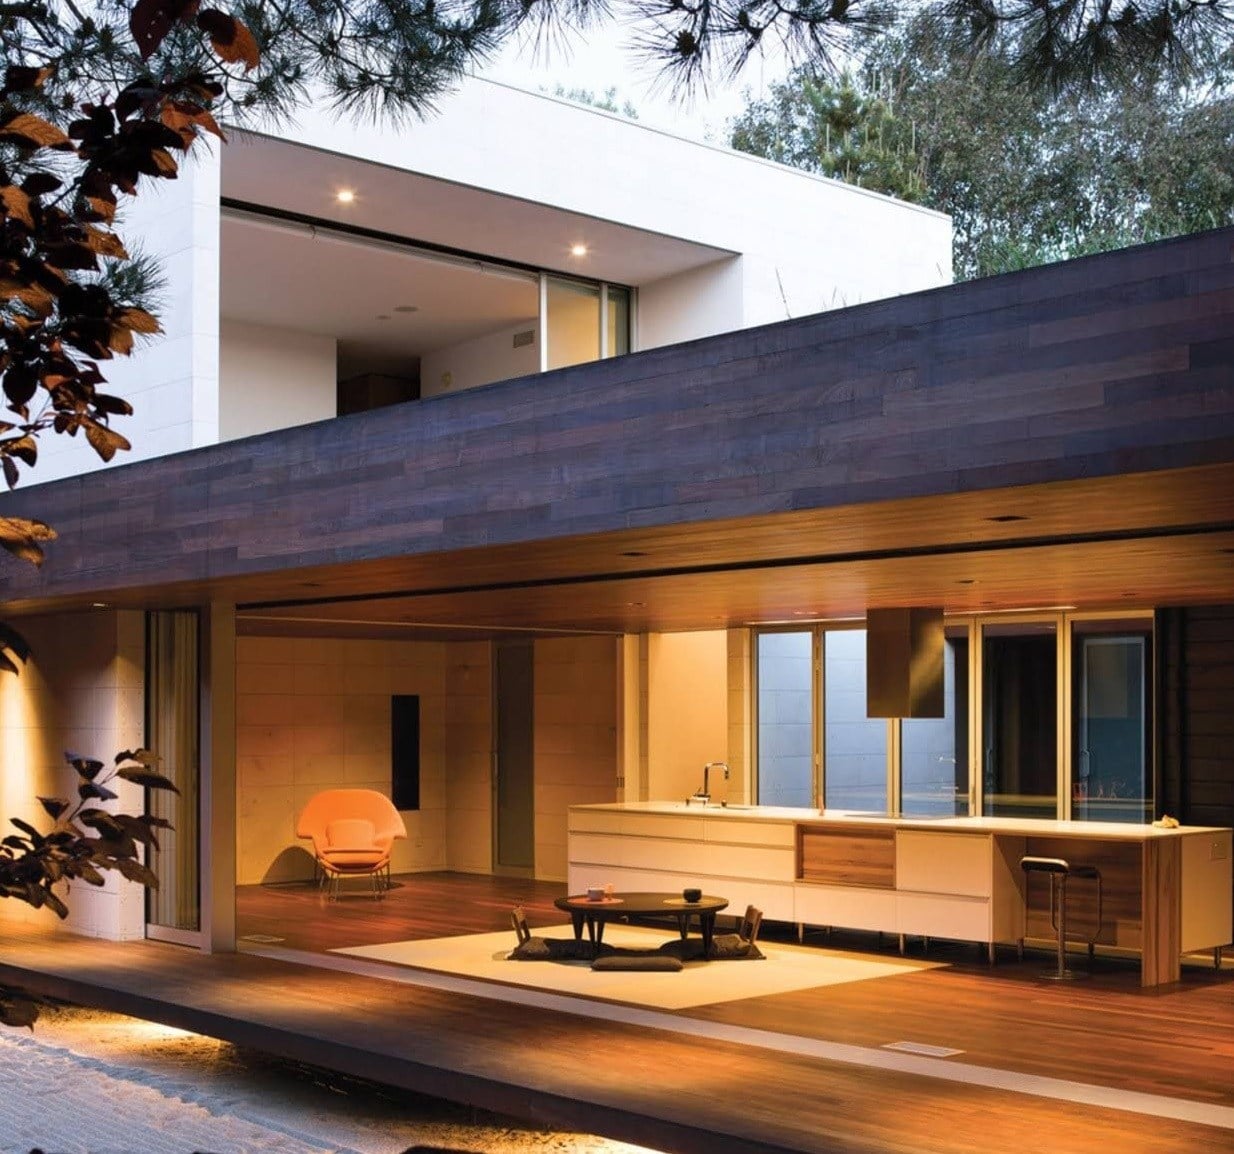 66 Ide Cantik Desain Rumah Kayu Jepang Kreatif Deh